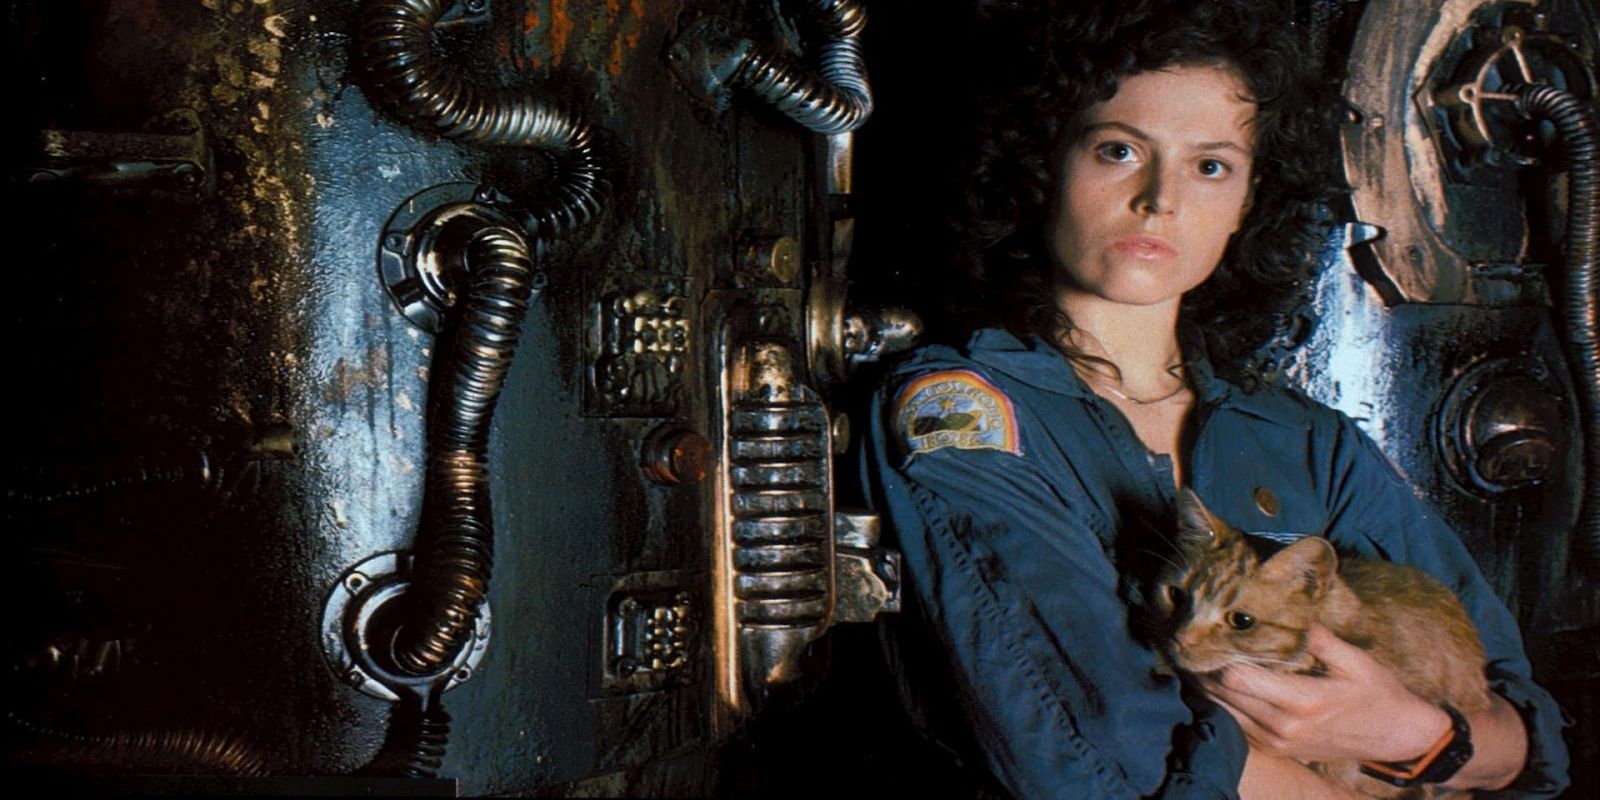 Ripley Alien from the 1979 movie Alien.